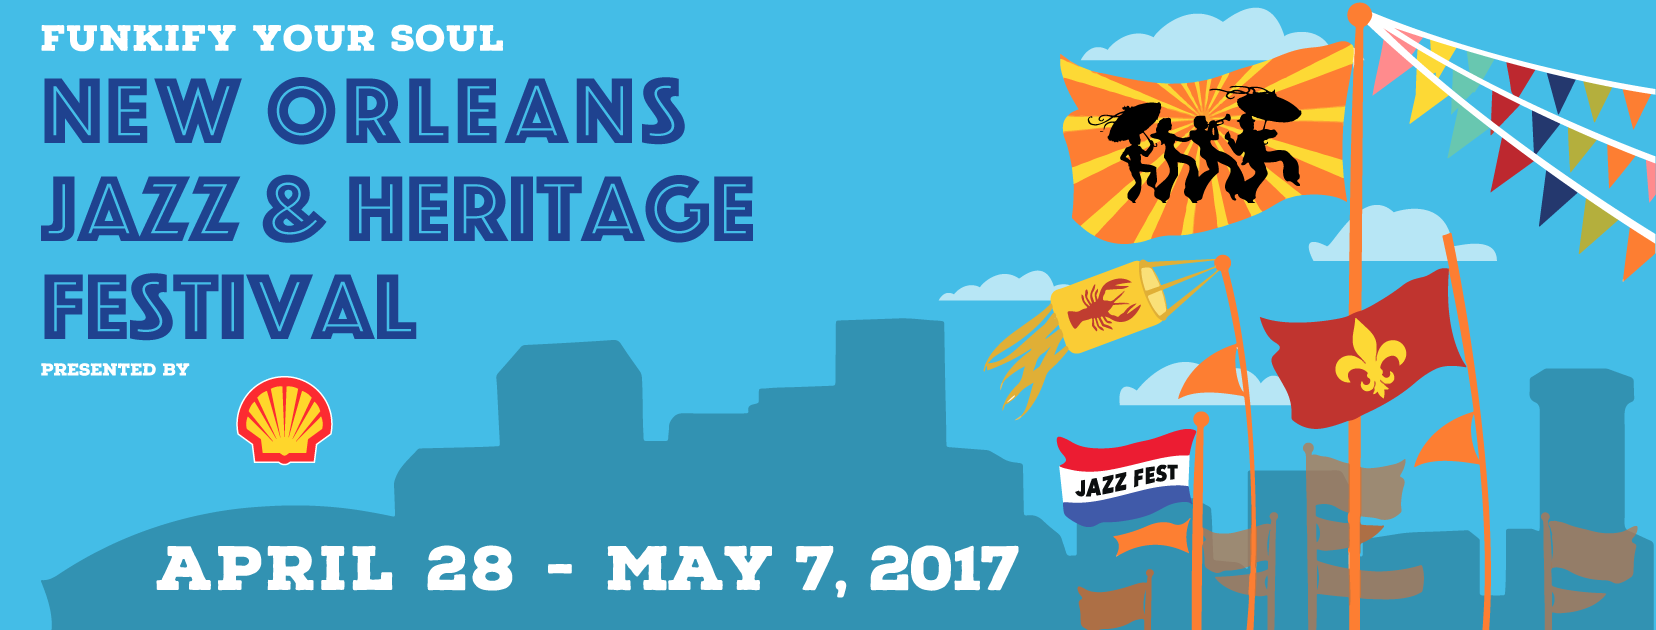 New Orleans Jazz Fest. Announces Lineup